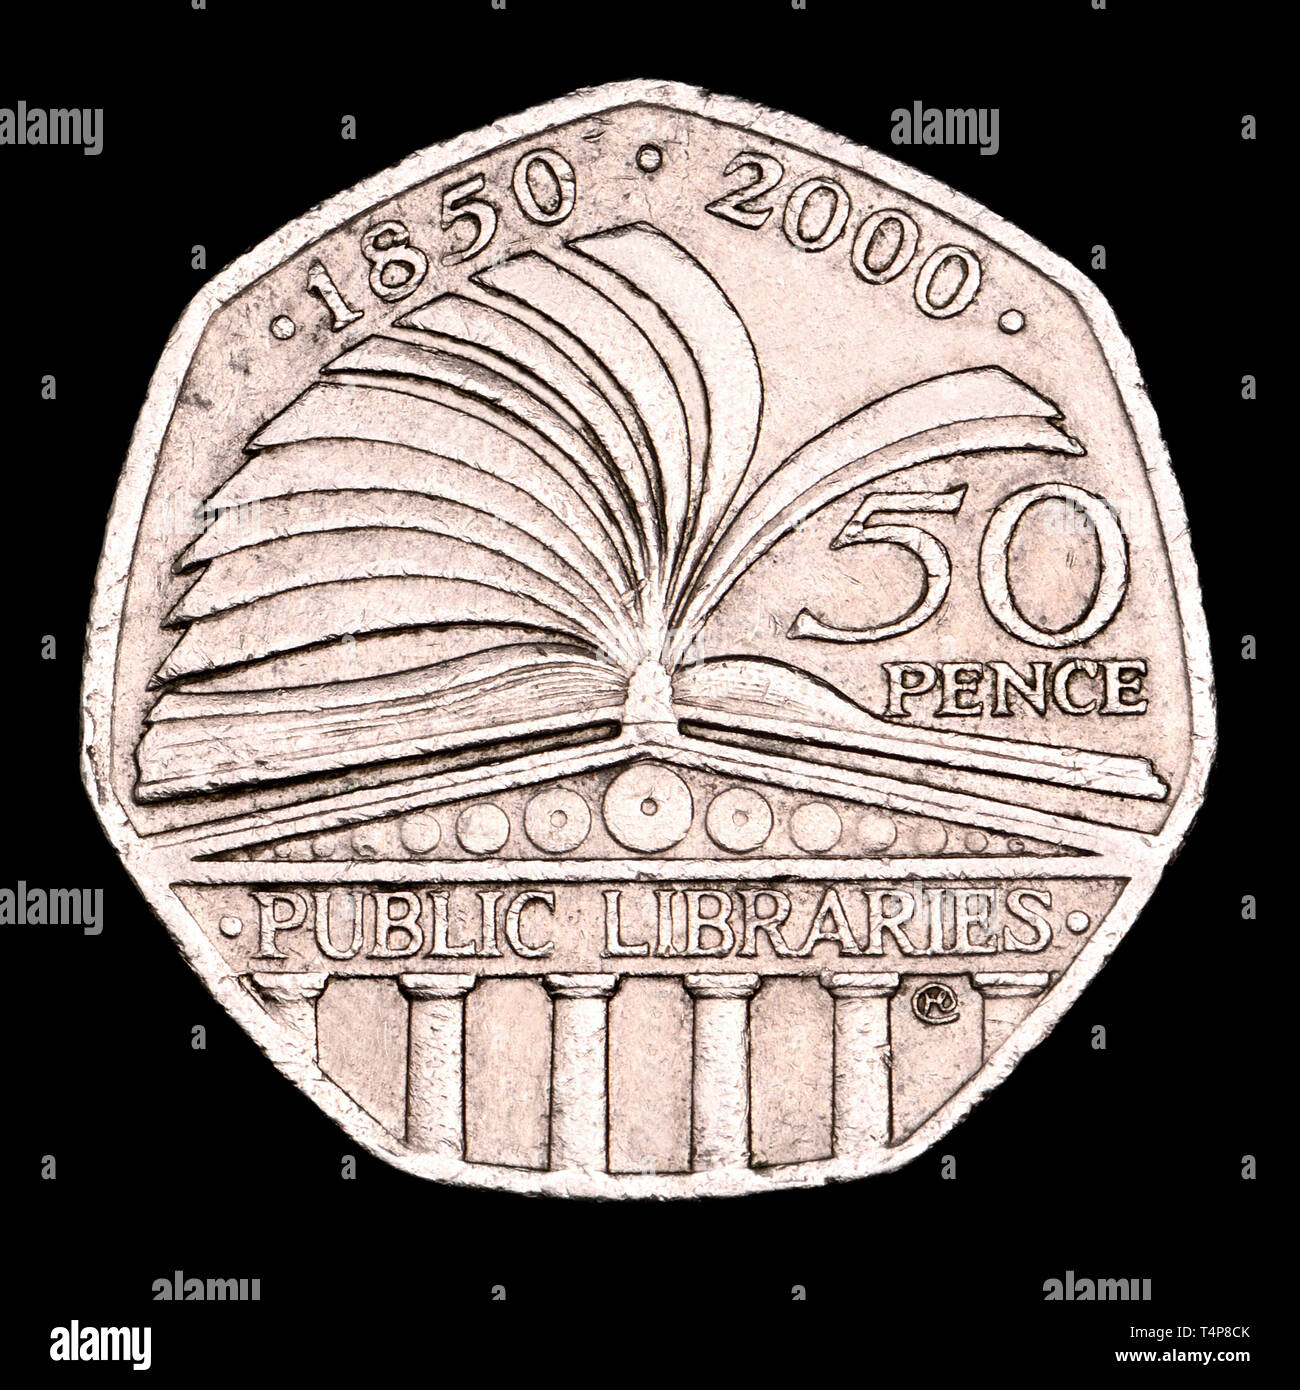 Britische commemorative 50p-Medaille. Britische Bibliotheken - 2000 Stockfoto